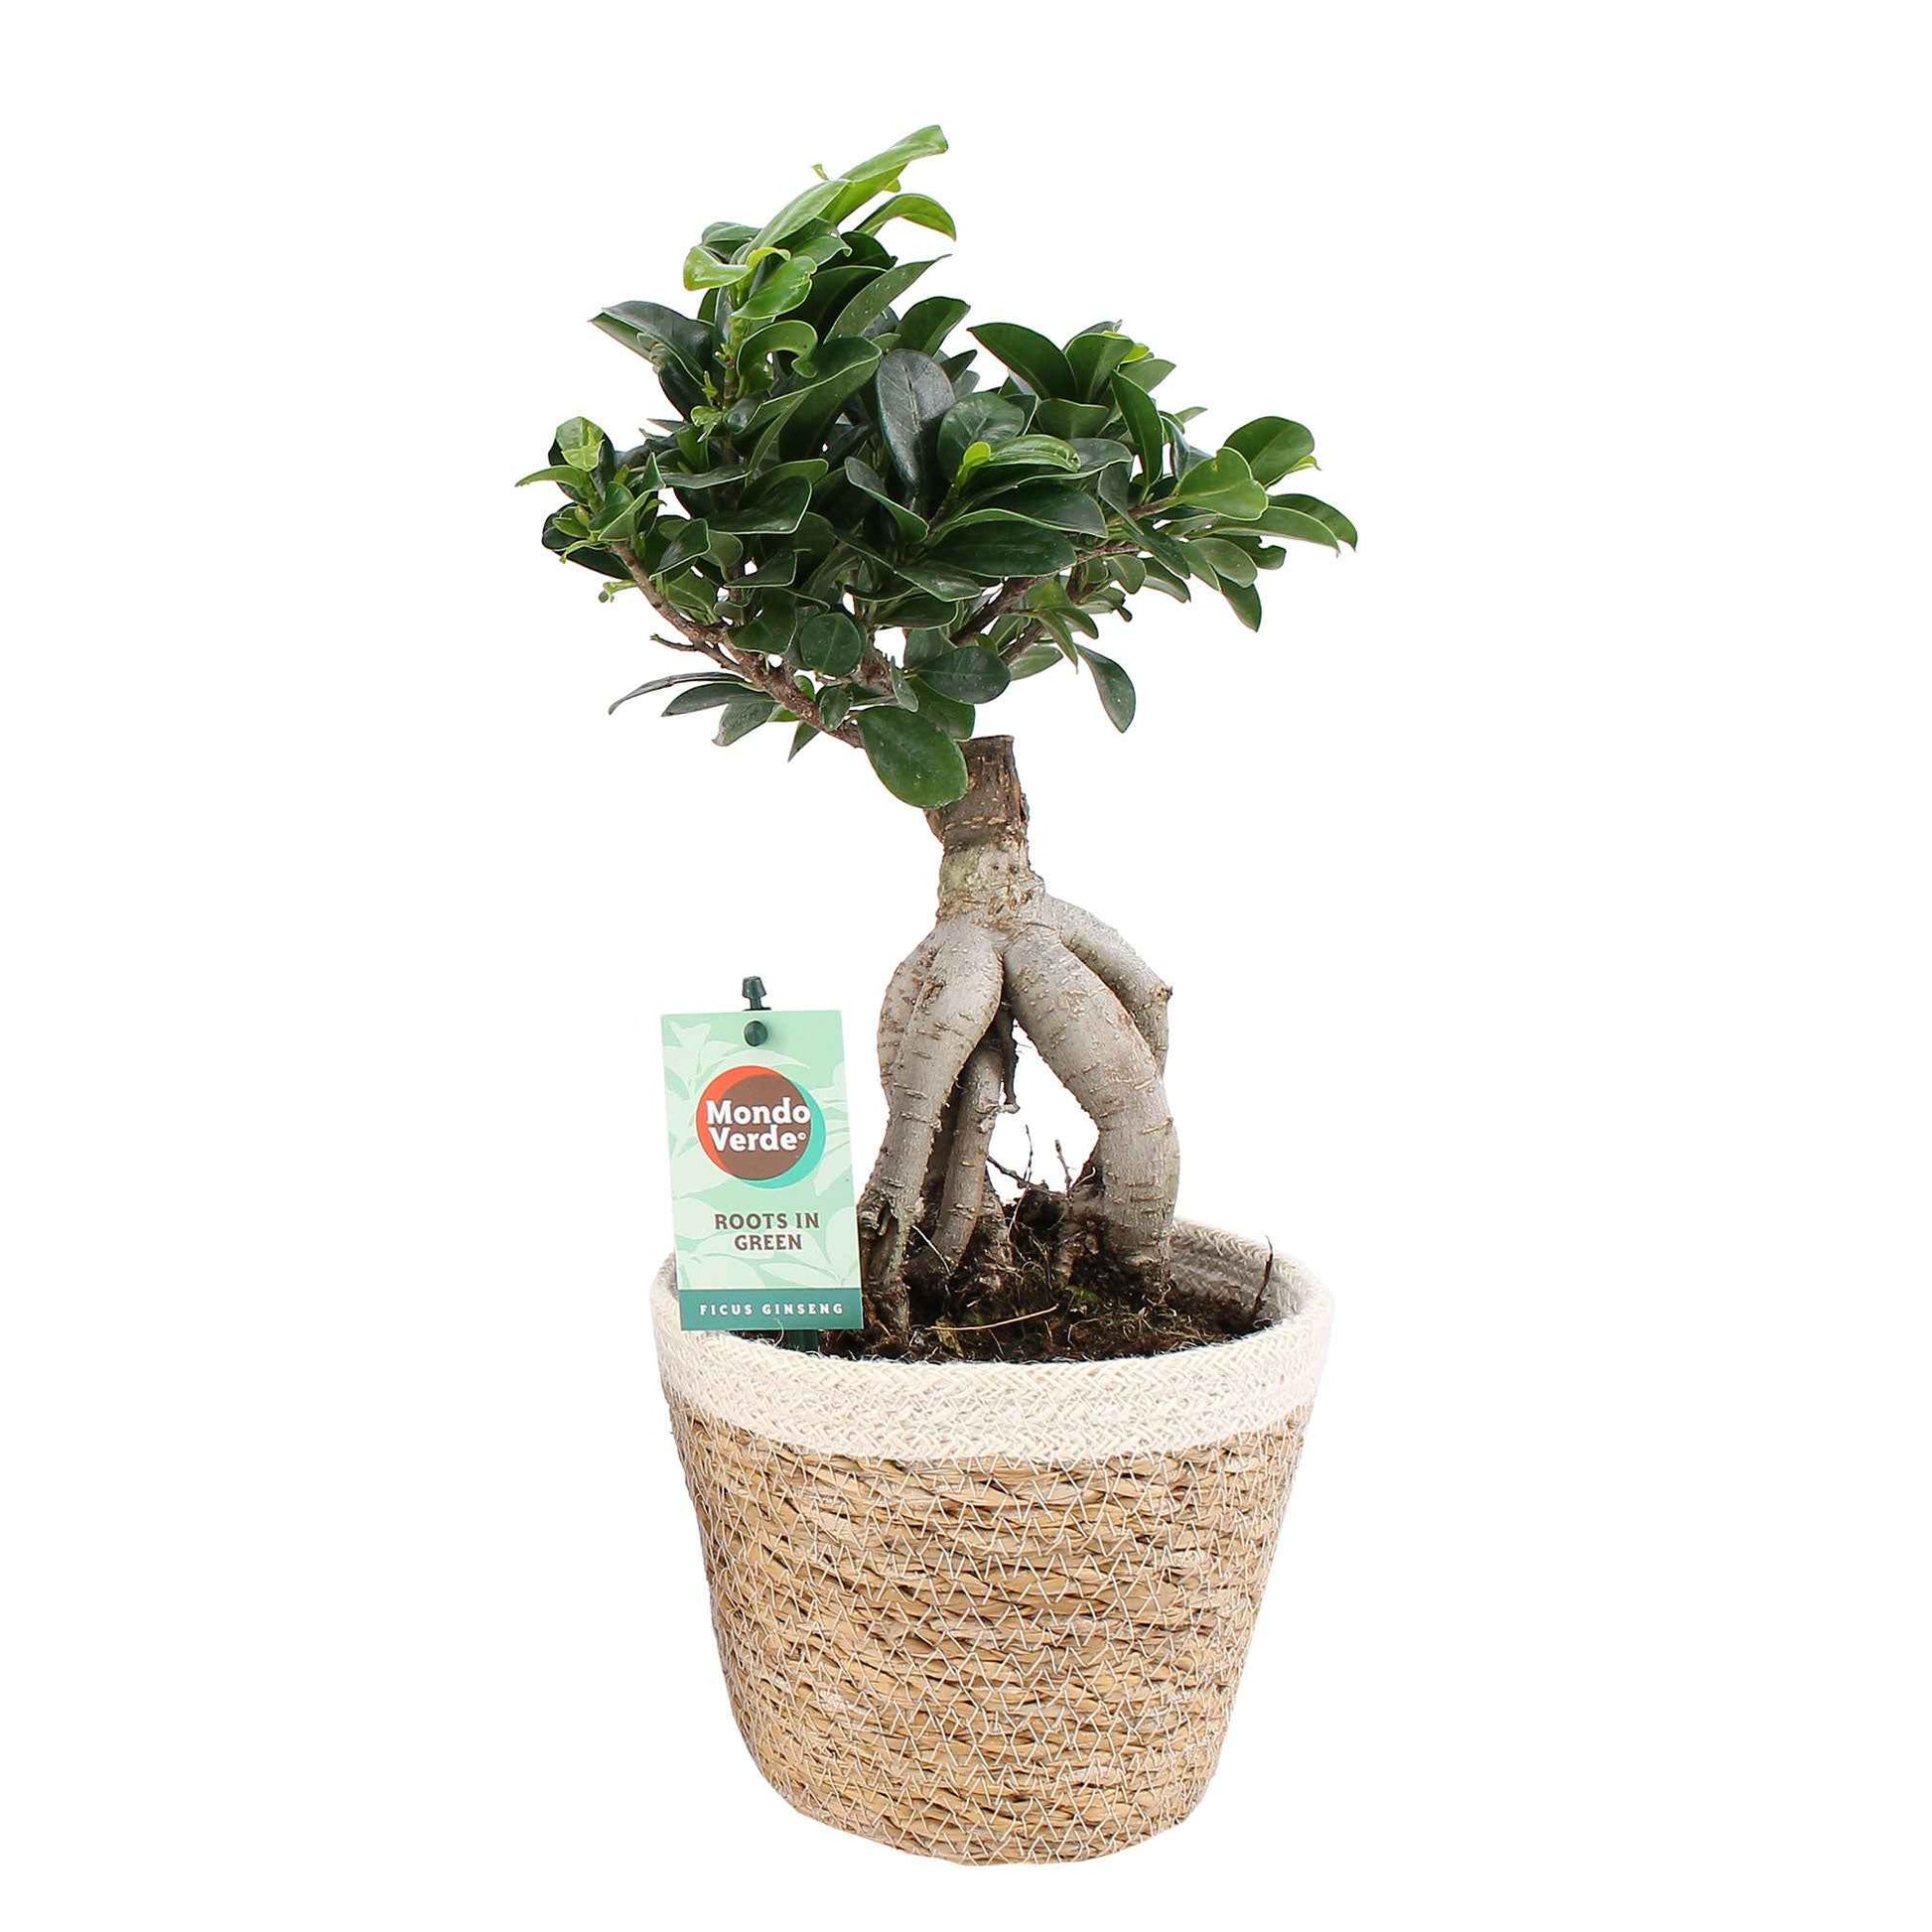 Figuier bonsaï Ficus microcarpa 'Ginseng' XL incl. panier - Plantes d'intérieur avec pot décoratif